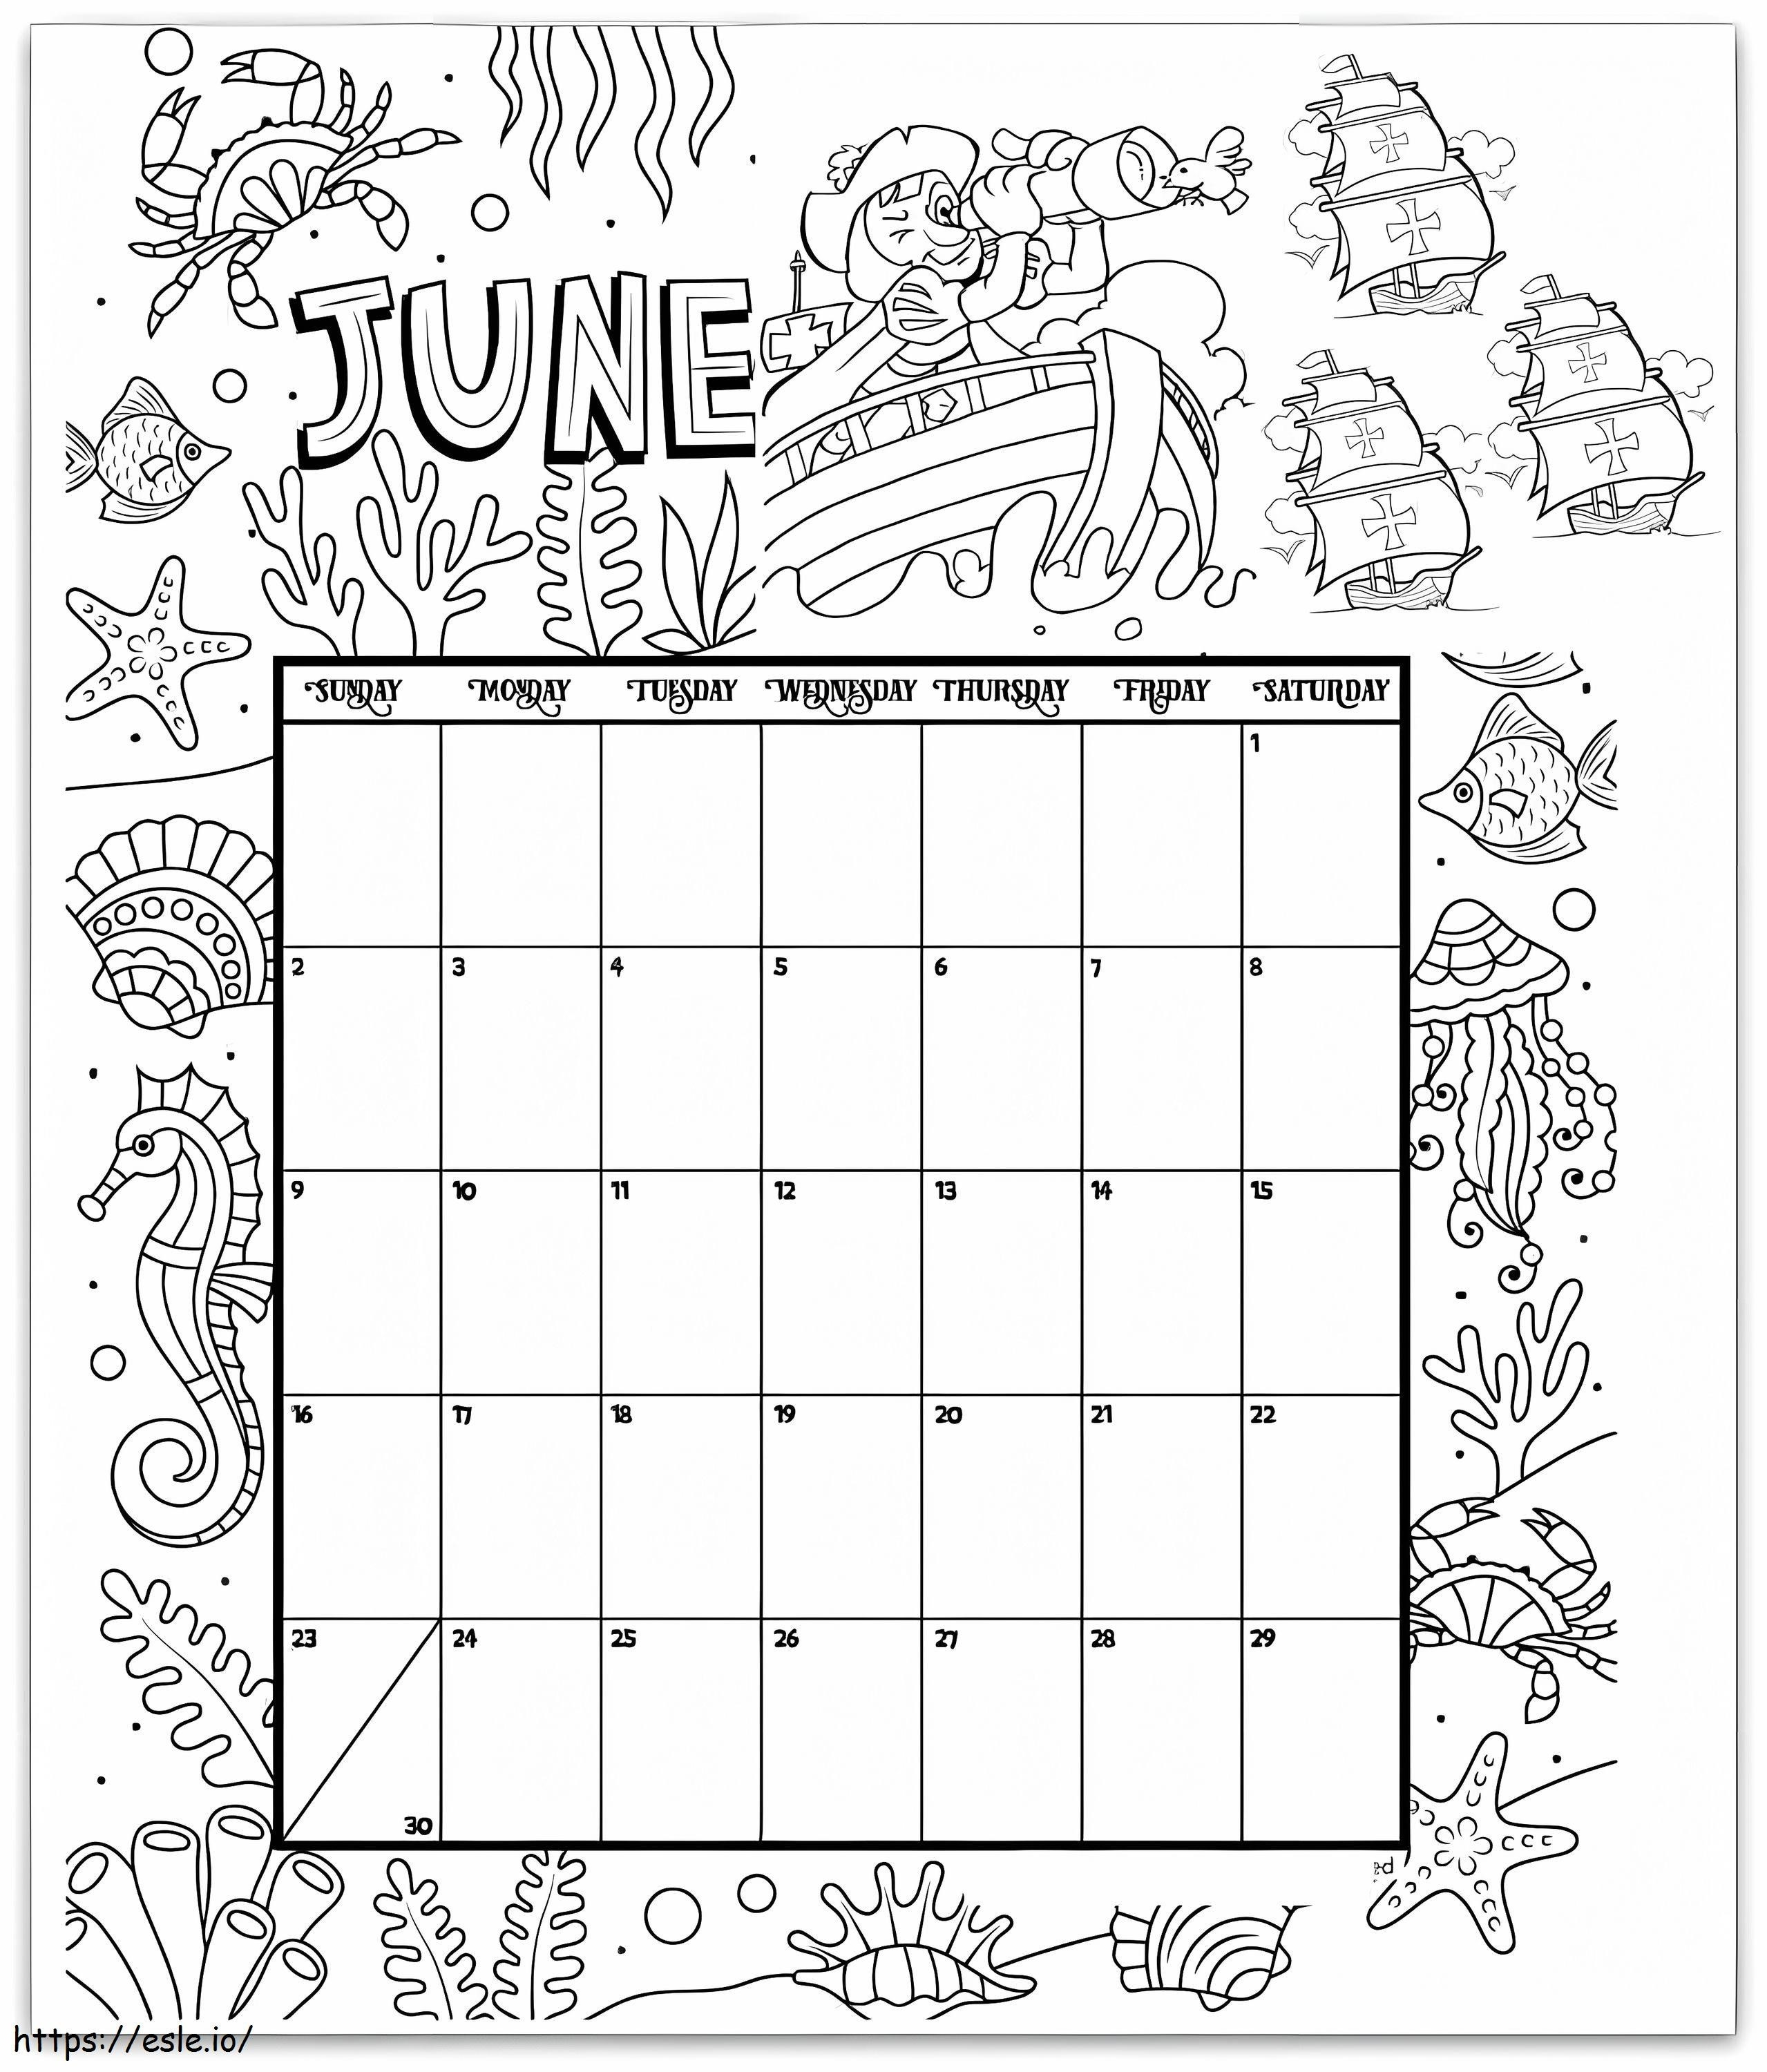 Calendário de 2 de junho para colorir